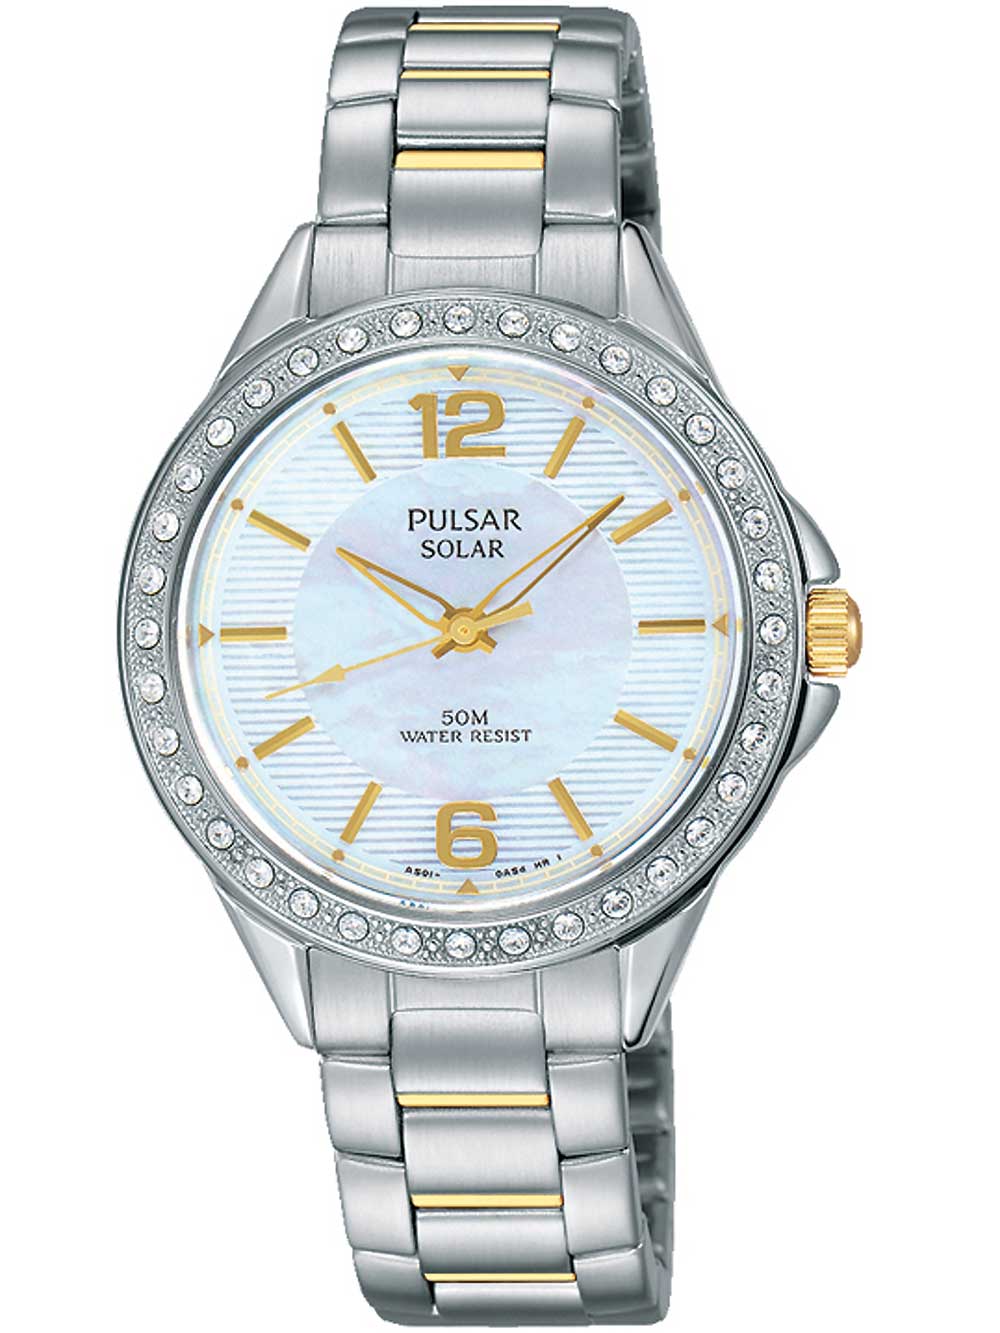 Pulsar PY5011X1 solar watch ladies with Swarovski 32mm 5ATM